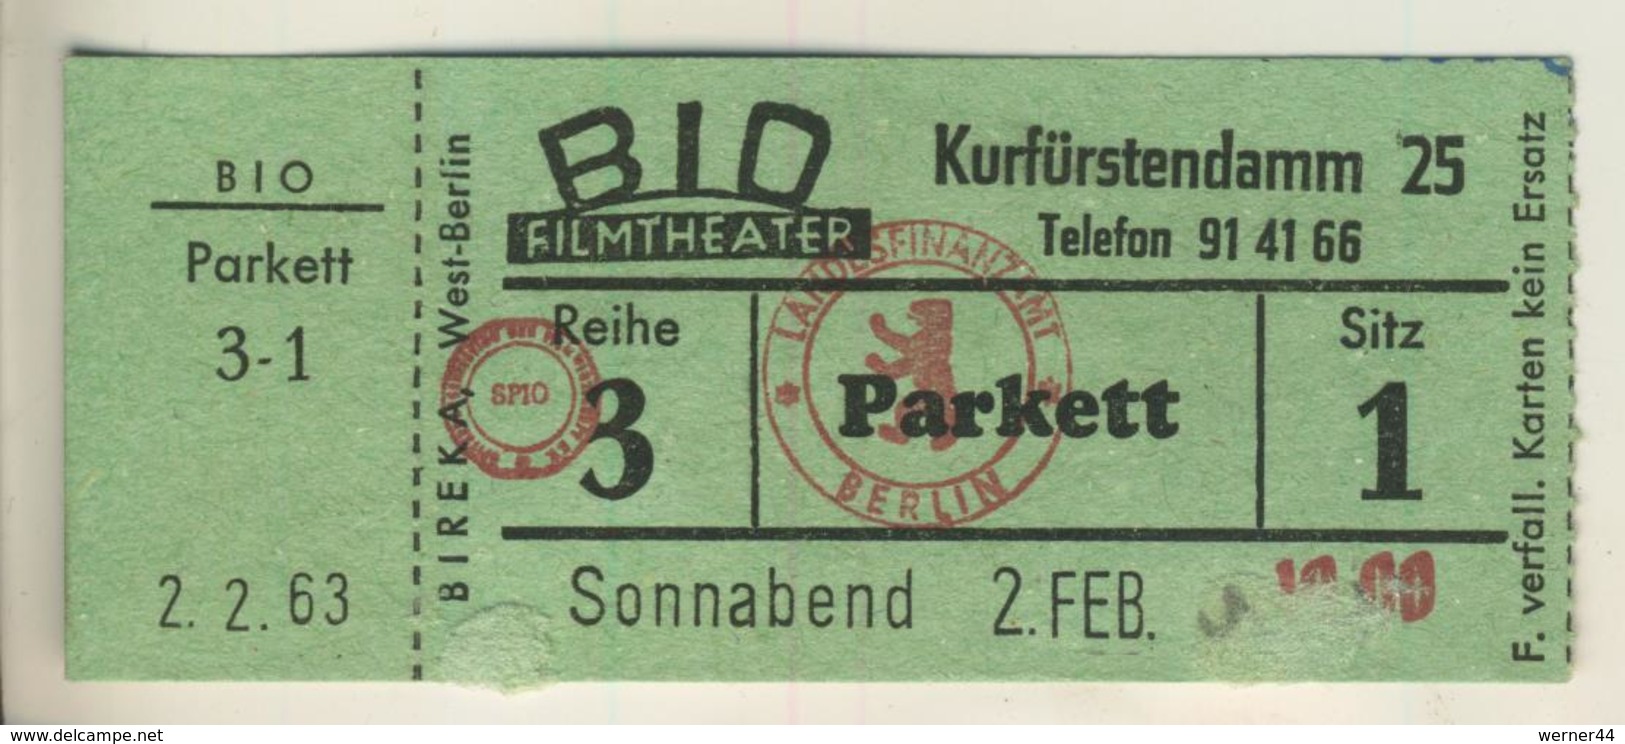 Berlin,Kurfürstendamm 25, Vom 2.2.1963  Eintrittskarte - BID Filmtheater  (53999-45) - Tickets D'entrée